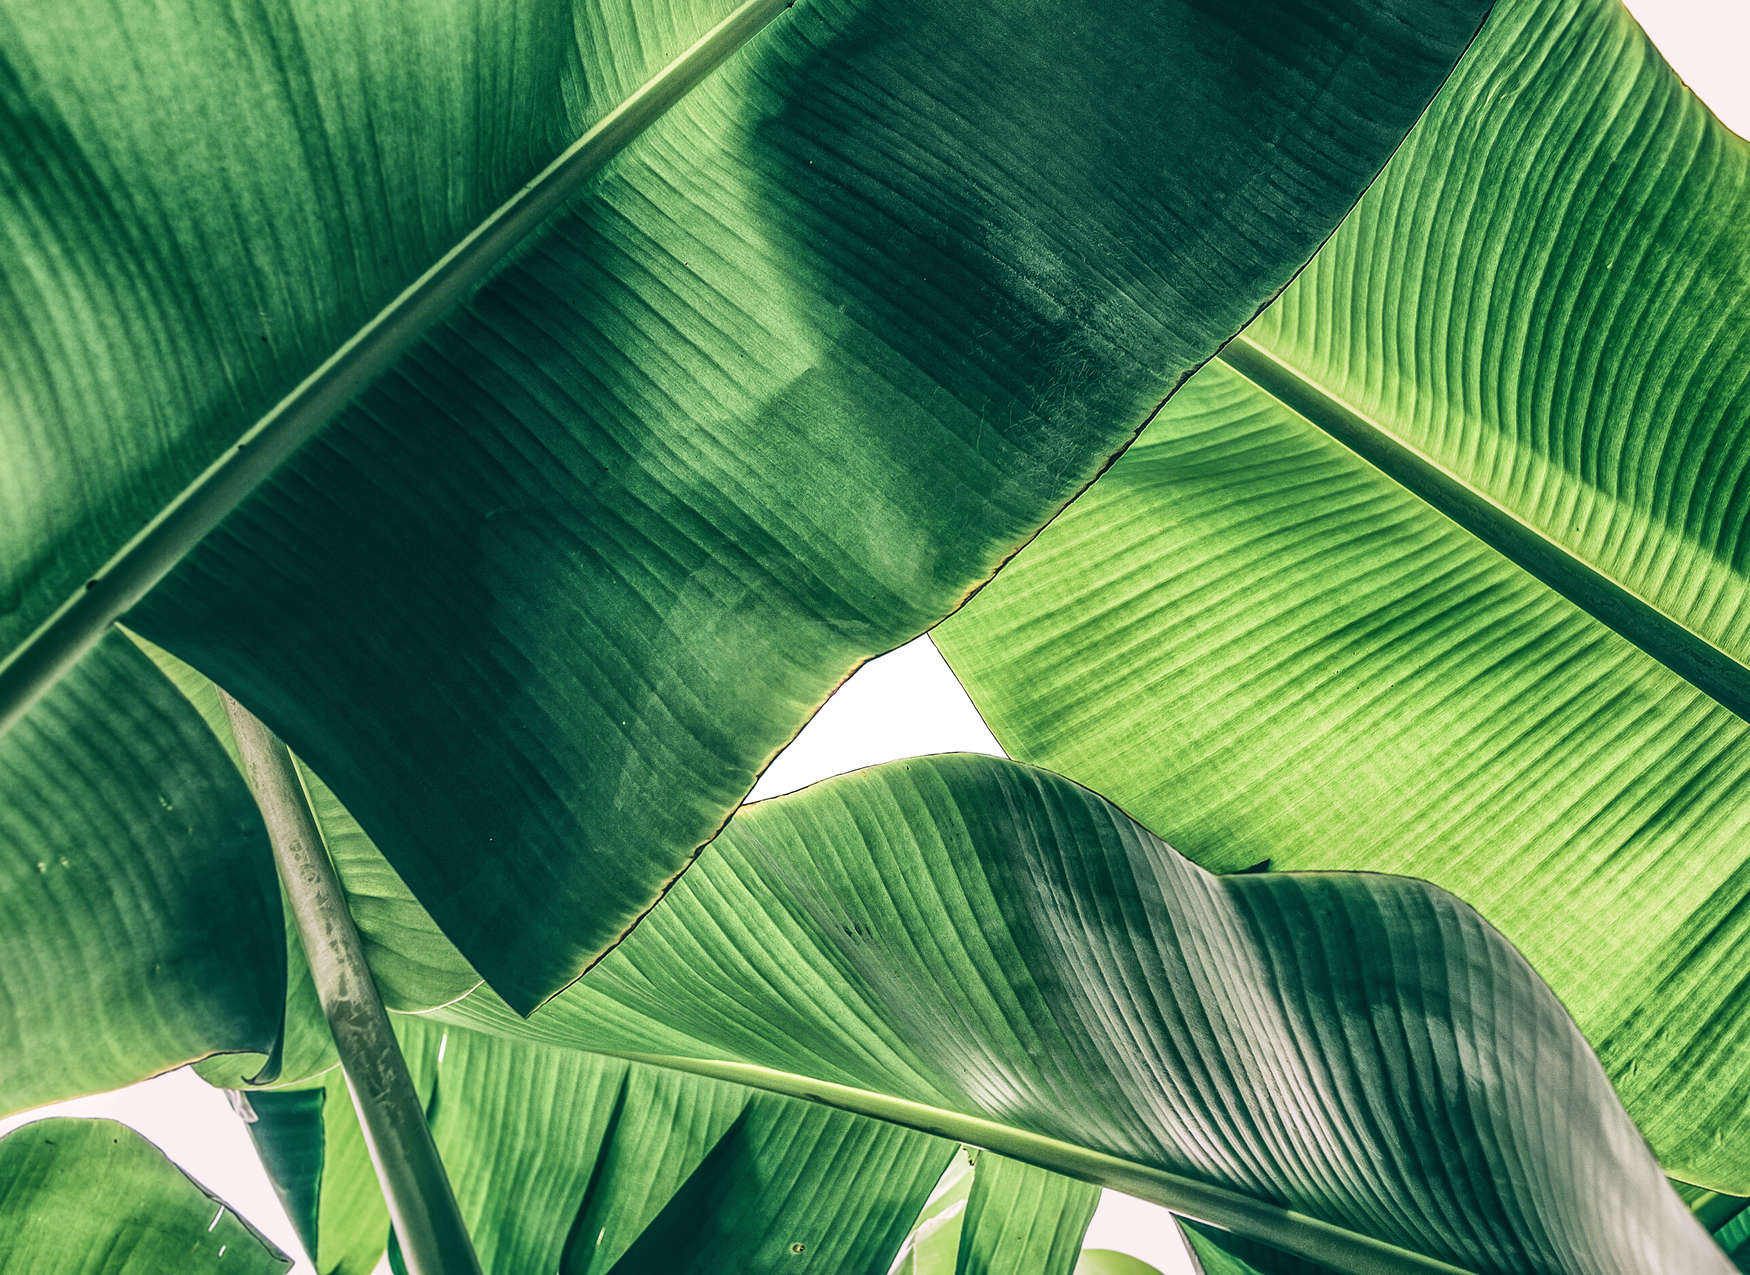             Motivo grafico con dettaglio foglie tropicali - Verde
        